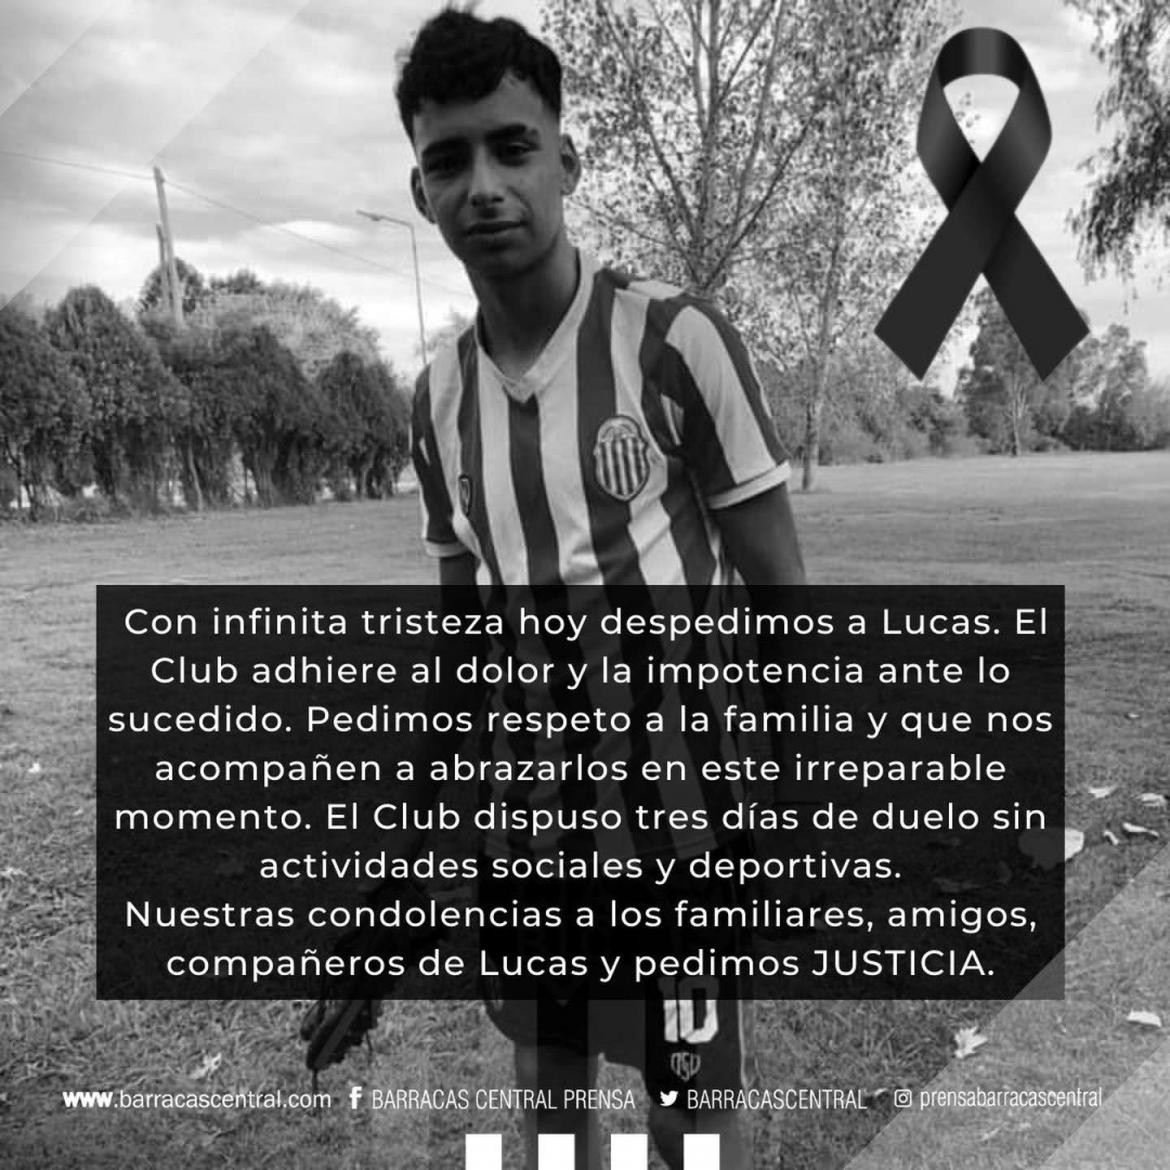 El comunicado de Barracas Central por la muerte de Lucas : “El club adhiere al dolor y la impotencia”	